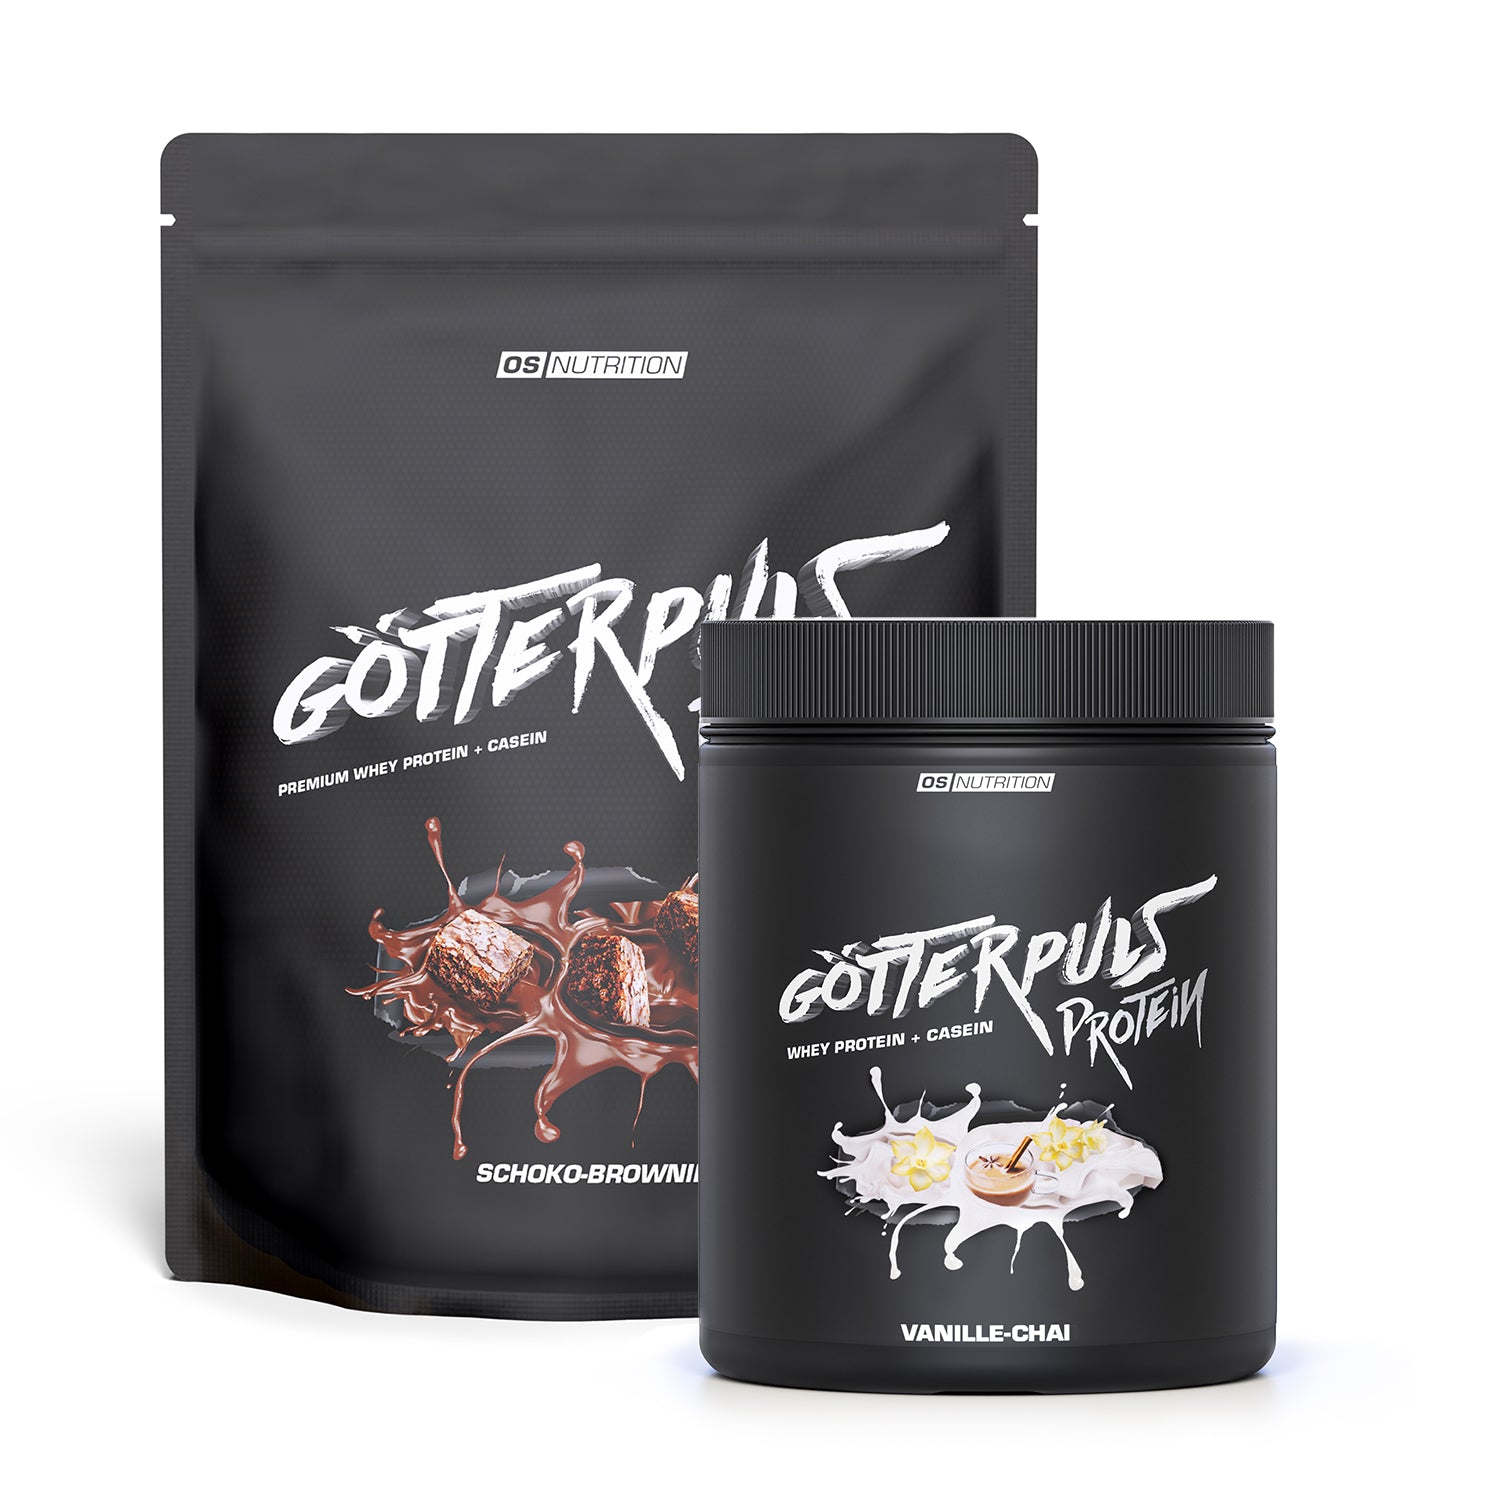 Götterpuls® Protein – Premium Whey Protein & Casein